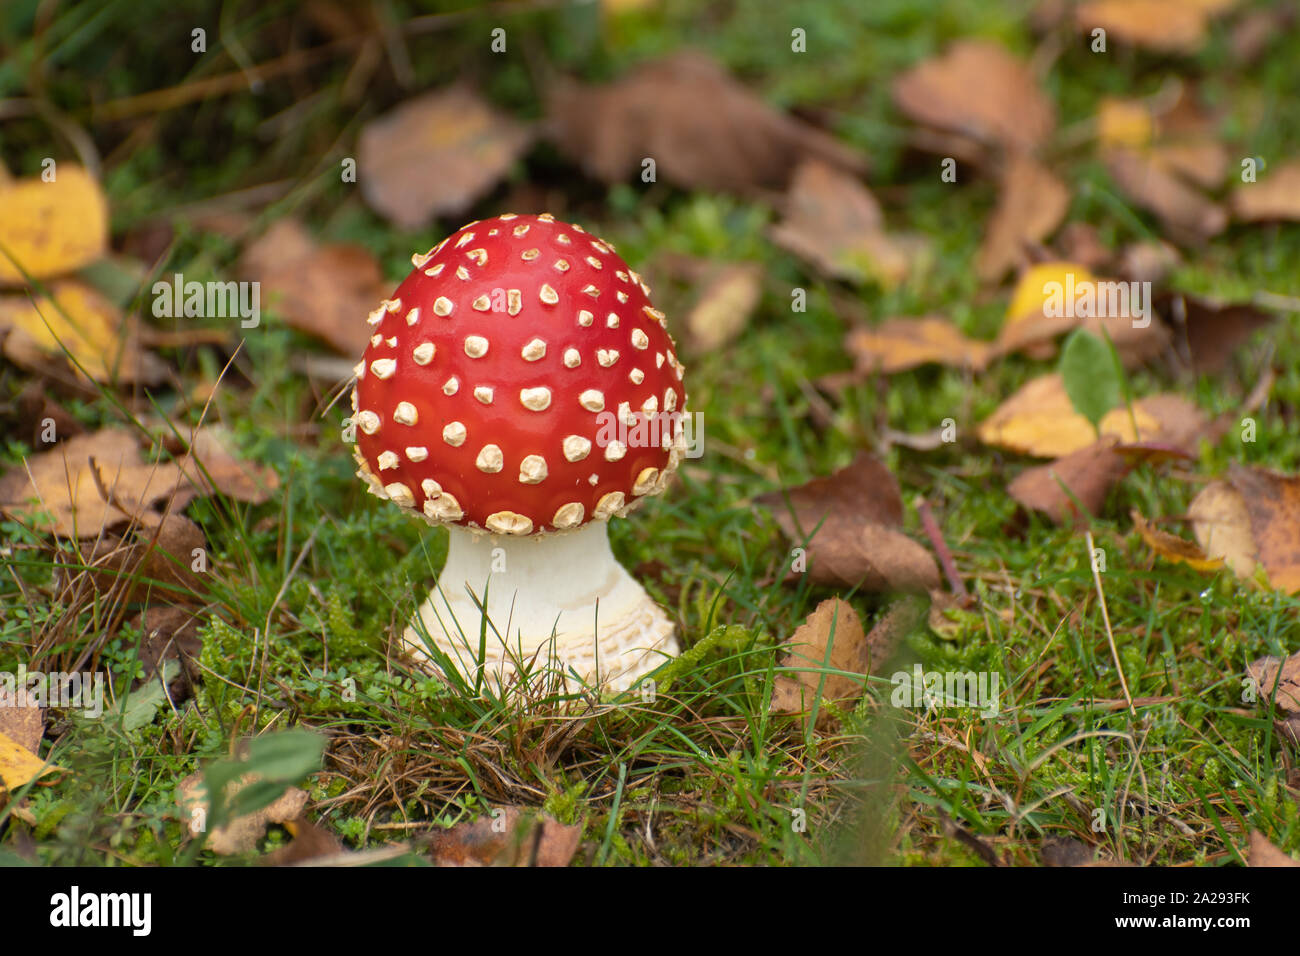 Fai volare lo sgabello agarico (Amanita muscaria) o fai volare amanita, un fungo rosso con macchie bianche, Inghilterra, Regno Unito Foto Stock